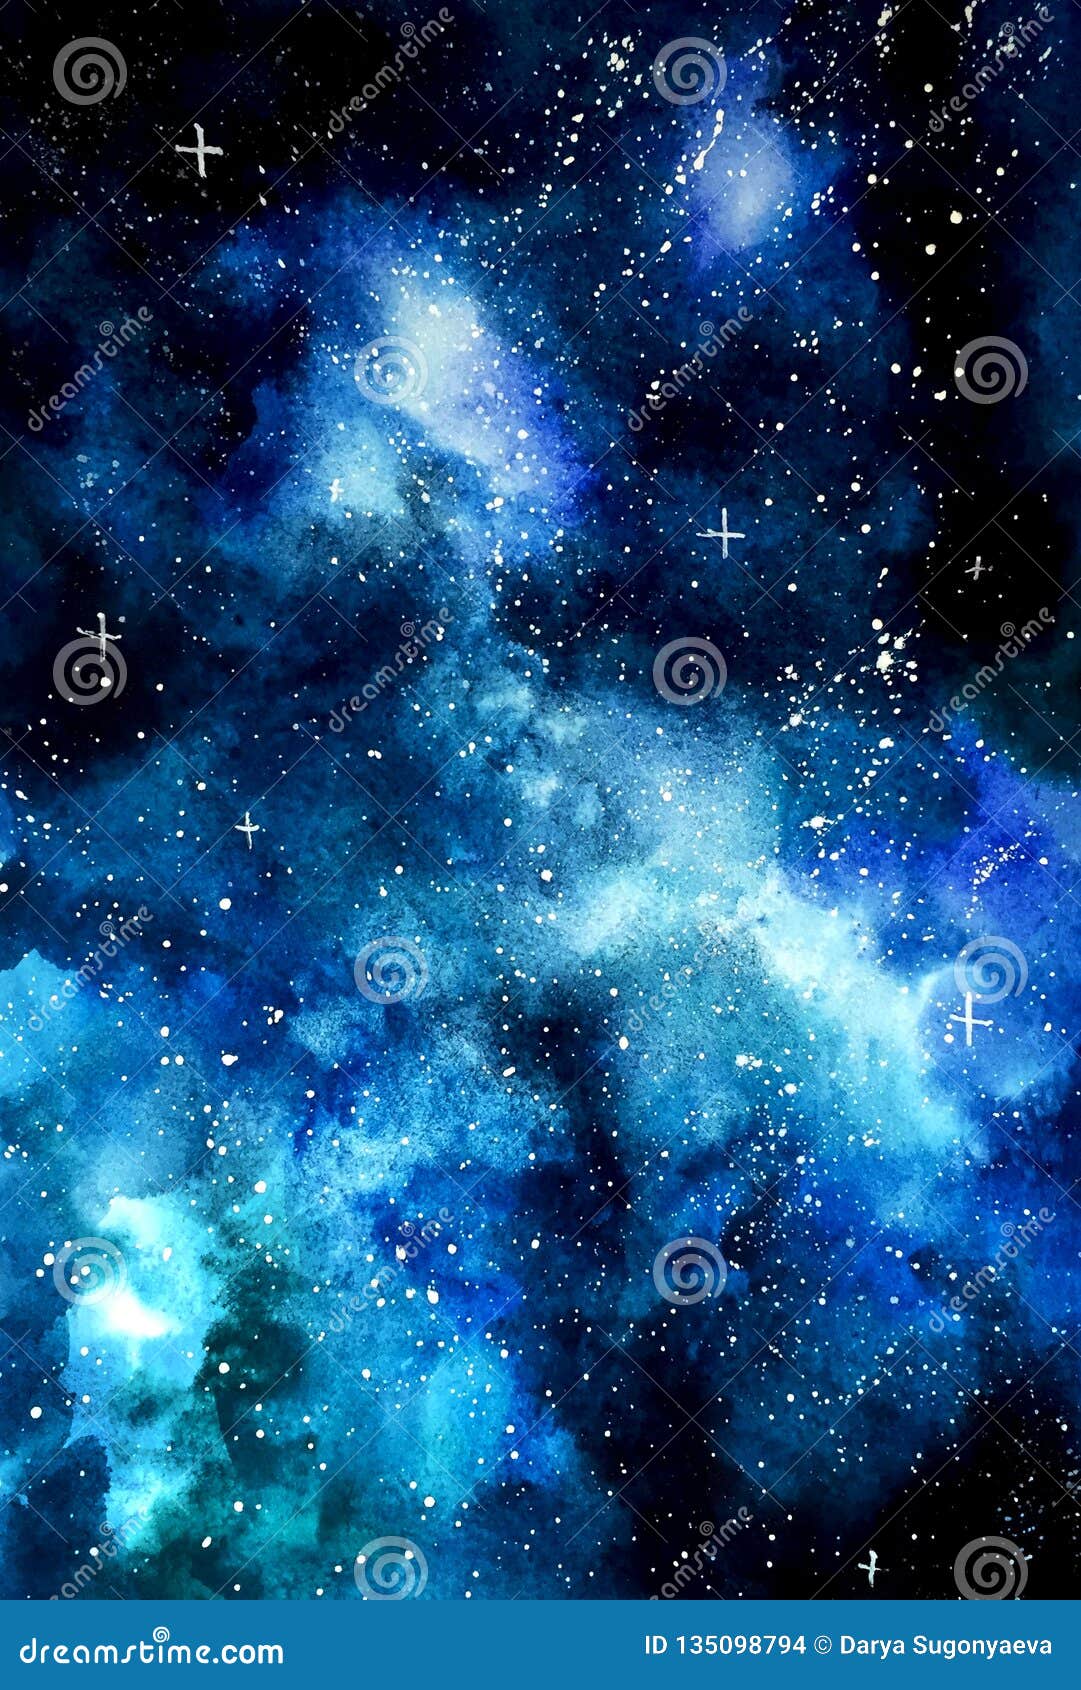 Hãy tải ảnh nền với một bầu trời xanh tuyệt đẹp cùng với chữ viết màu xanh dương theo phong cách của vũ trụ. Màu sắc và sự kết hợp của chúng đã tạo nên một bức tranh tuyệt vời về vũ trụ mà bạn không thể bỏ qua.